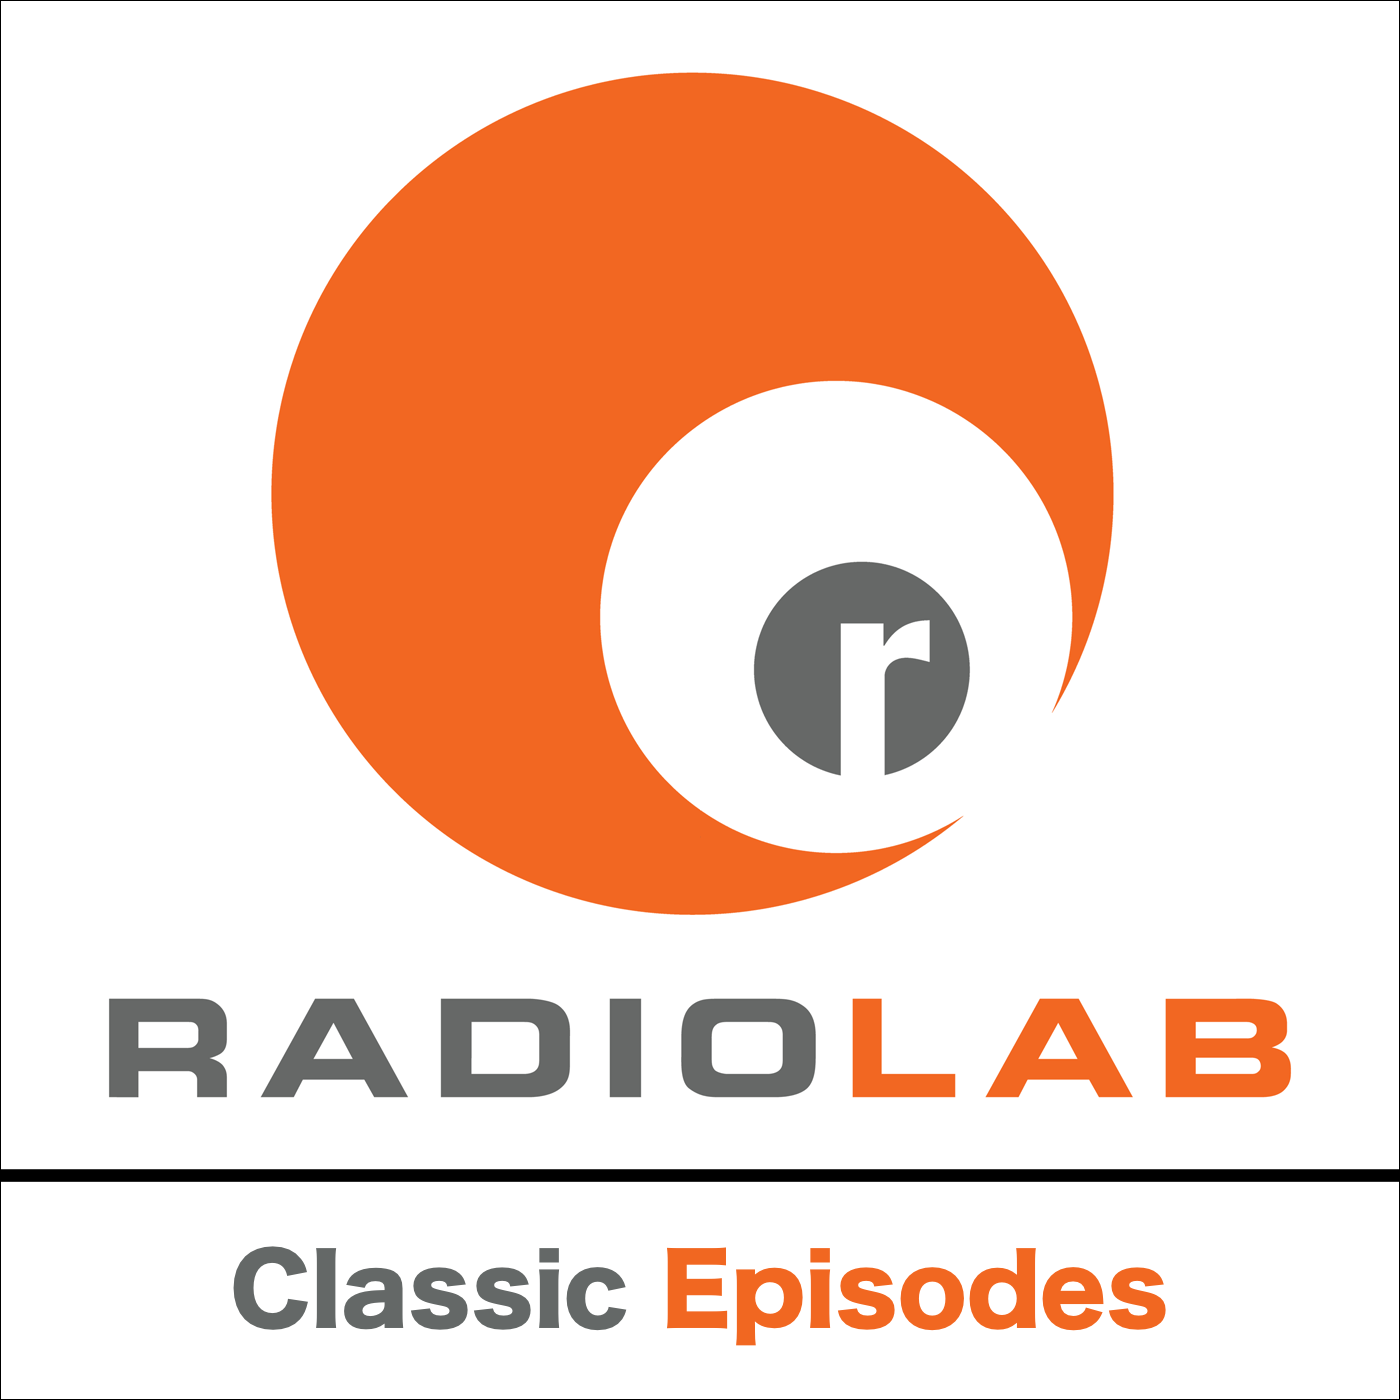 Radiolab album art